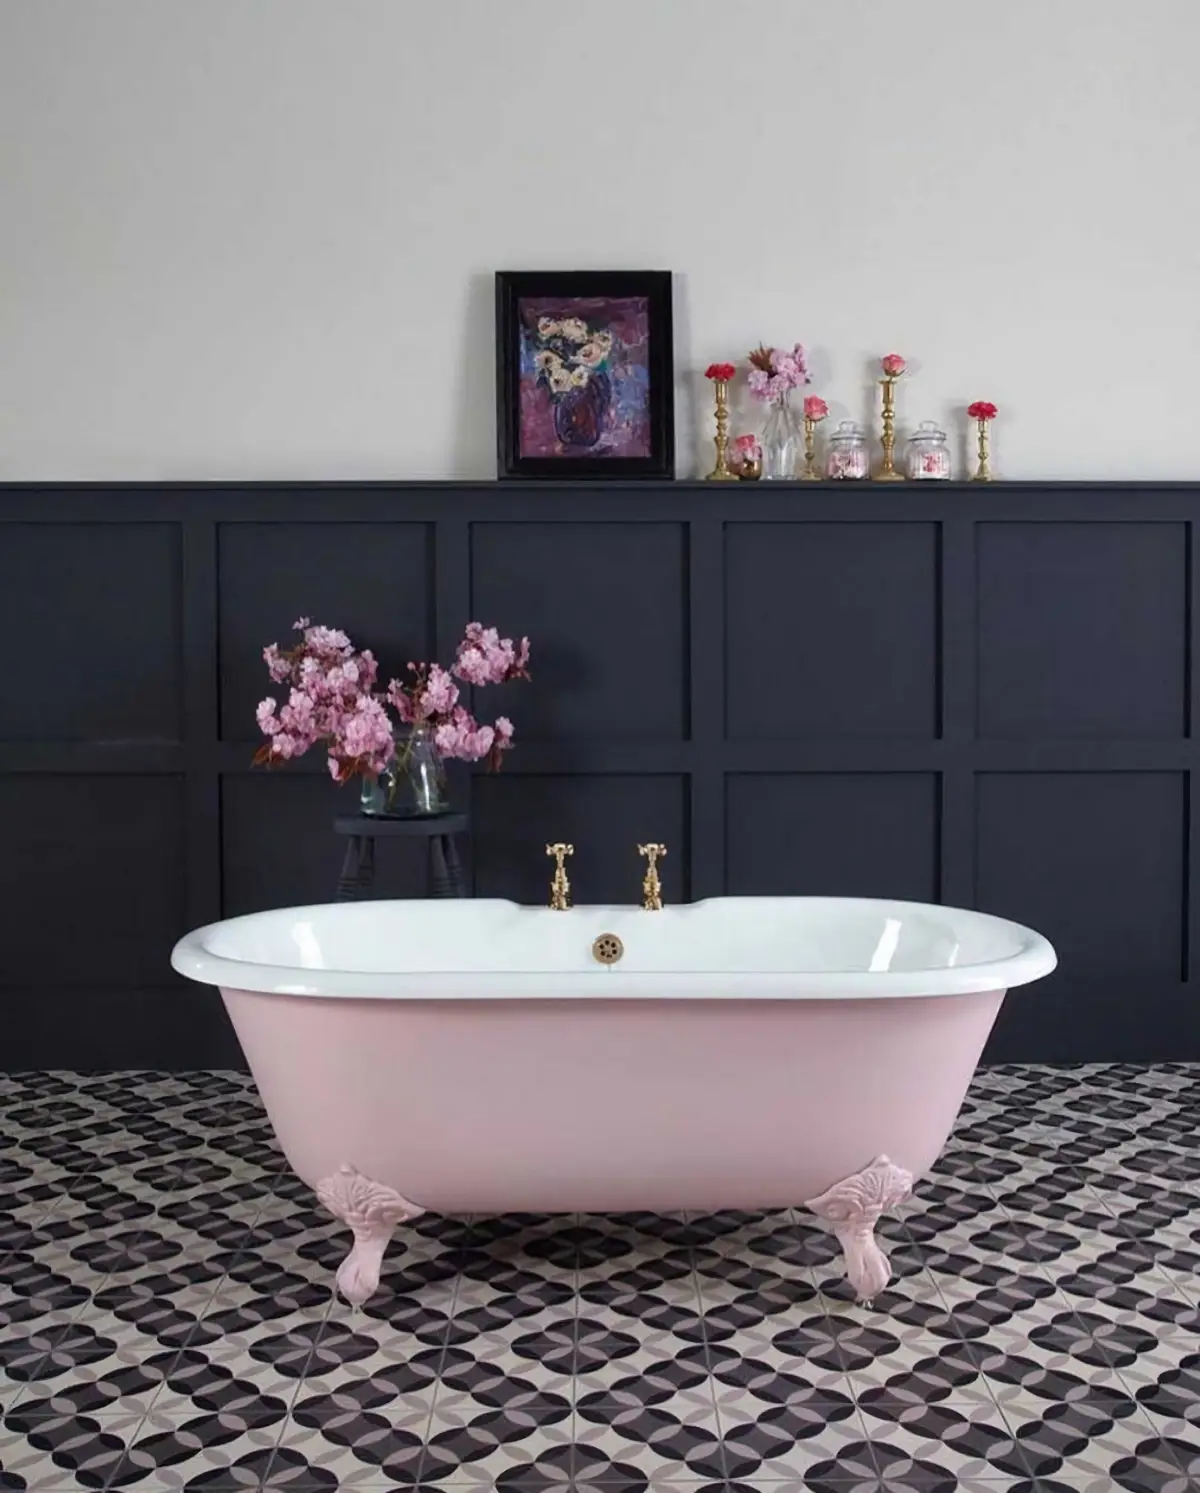 wie lange lueften fenster beschlagen beschlagene fenster im badezimmer rosa badewanne orchidee